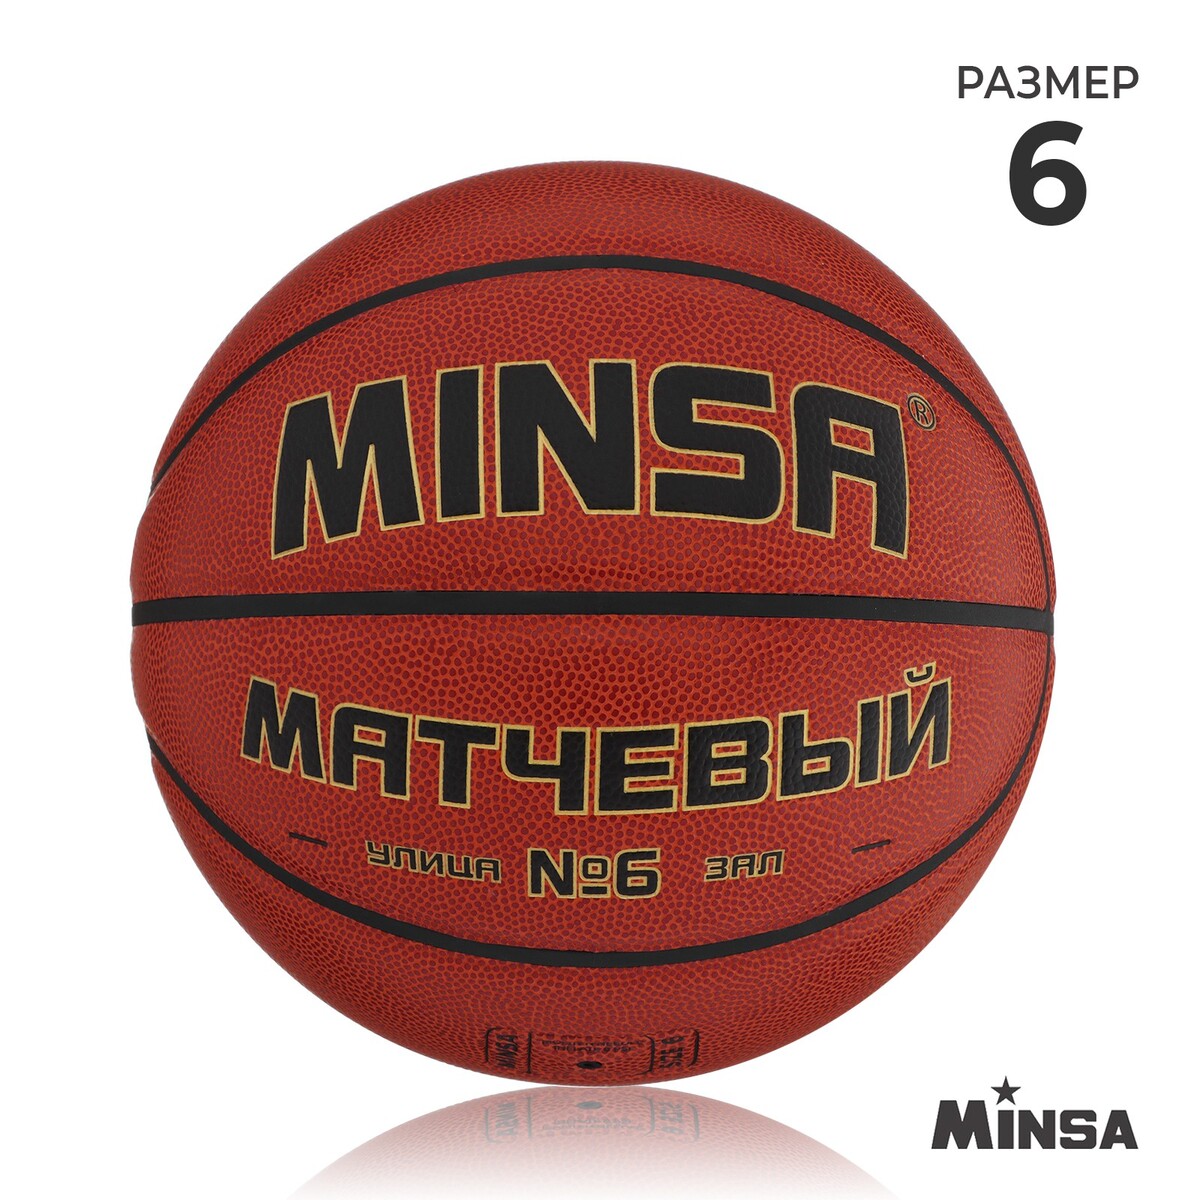 Баскетбольный мяч minsa, матчевый, microfiber pu, клееный, 8 панелей, р. 6 мяч баскетбольный minsa street пвх клееный 8 панелей р 7